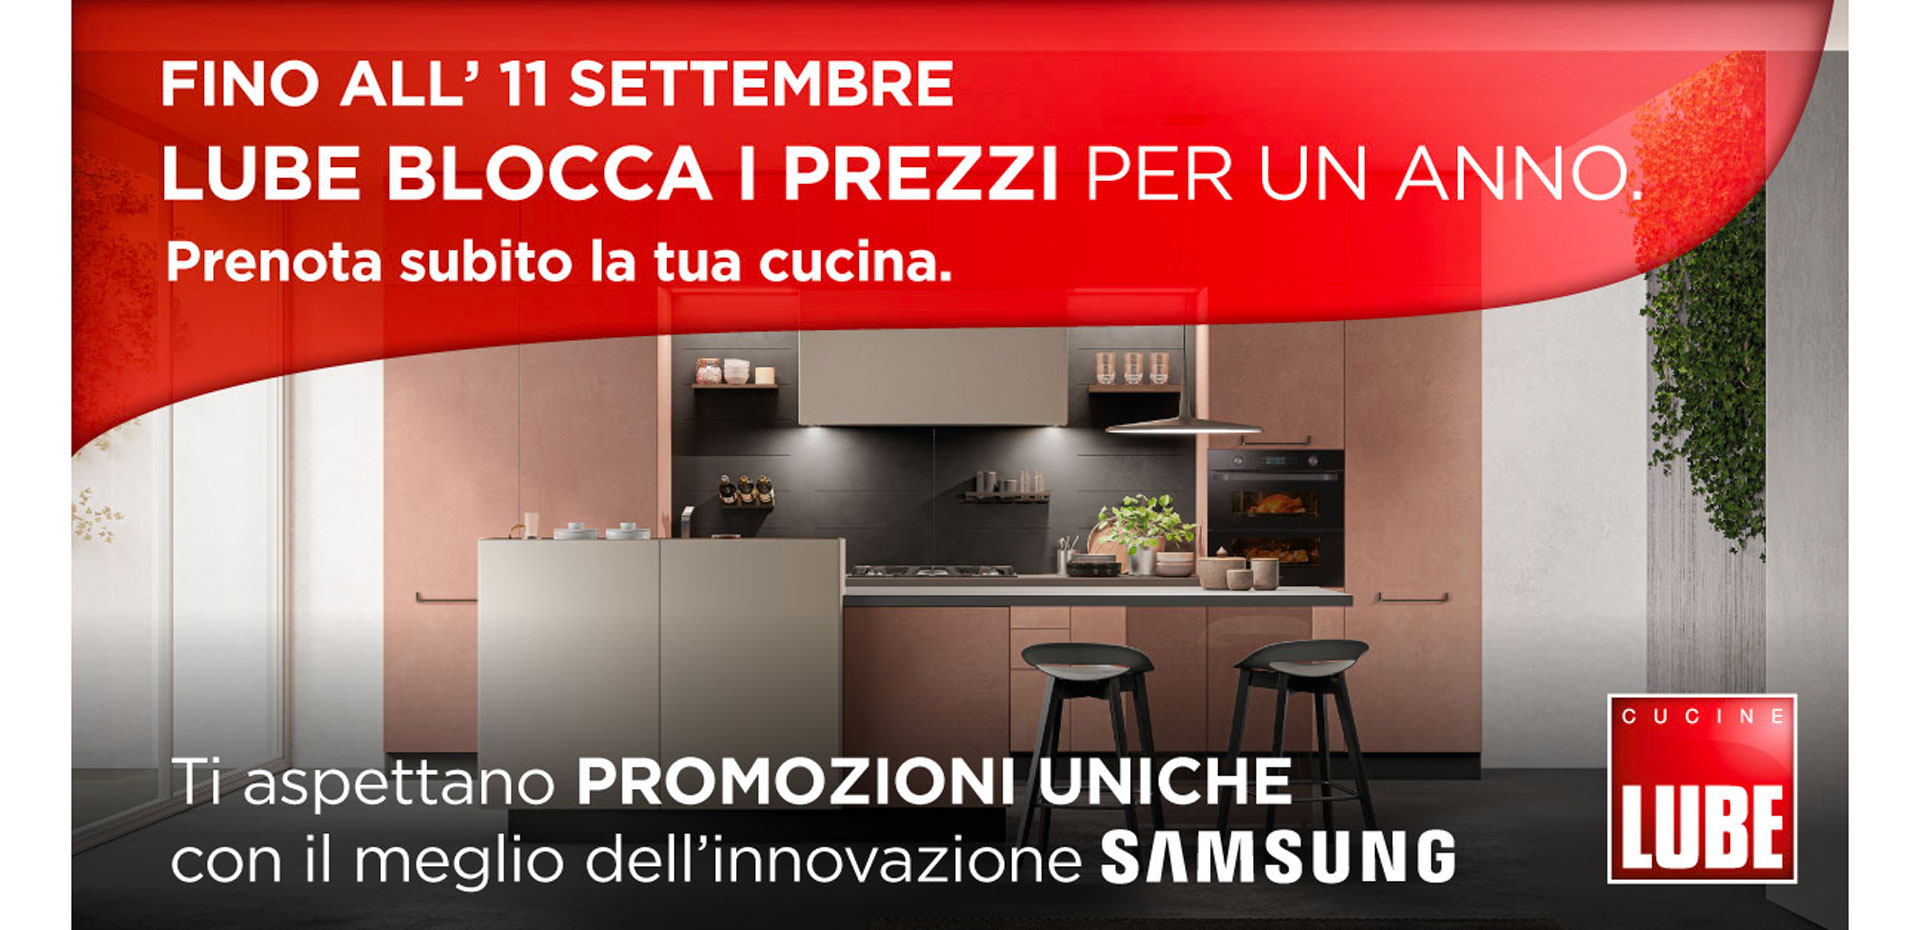 Prenota subito la tua nuova cucina LUBE entro l'11 settembre! Ti garantiamo il prezzo bloccato per 12 mesi! - LUBE CREO Palombara Sabina (Roma)